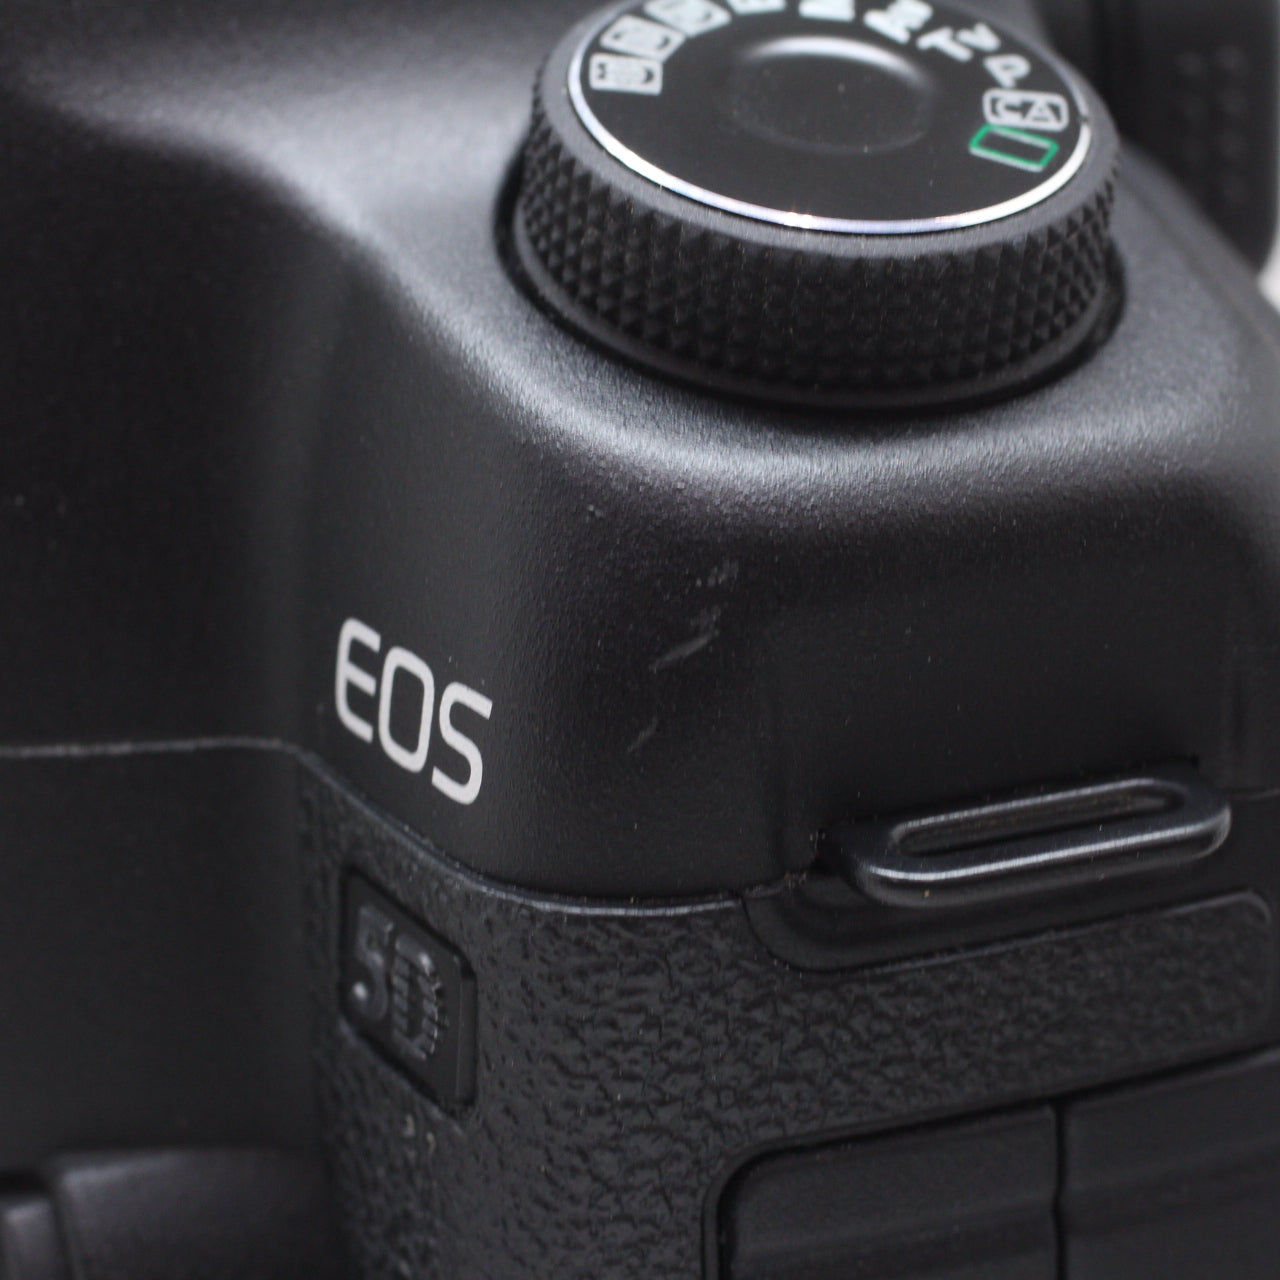 中古品 Canon EOS 5D MarkII ボディ【10月23日(日)のYouTube生配信でご紹介】 – サトカメオンラインショップ